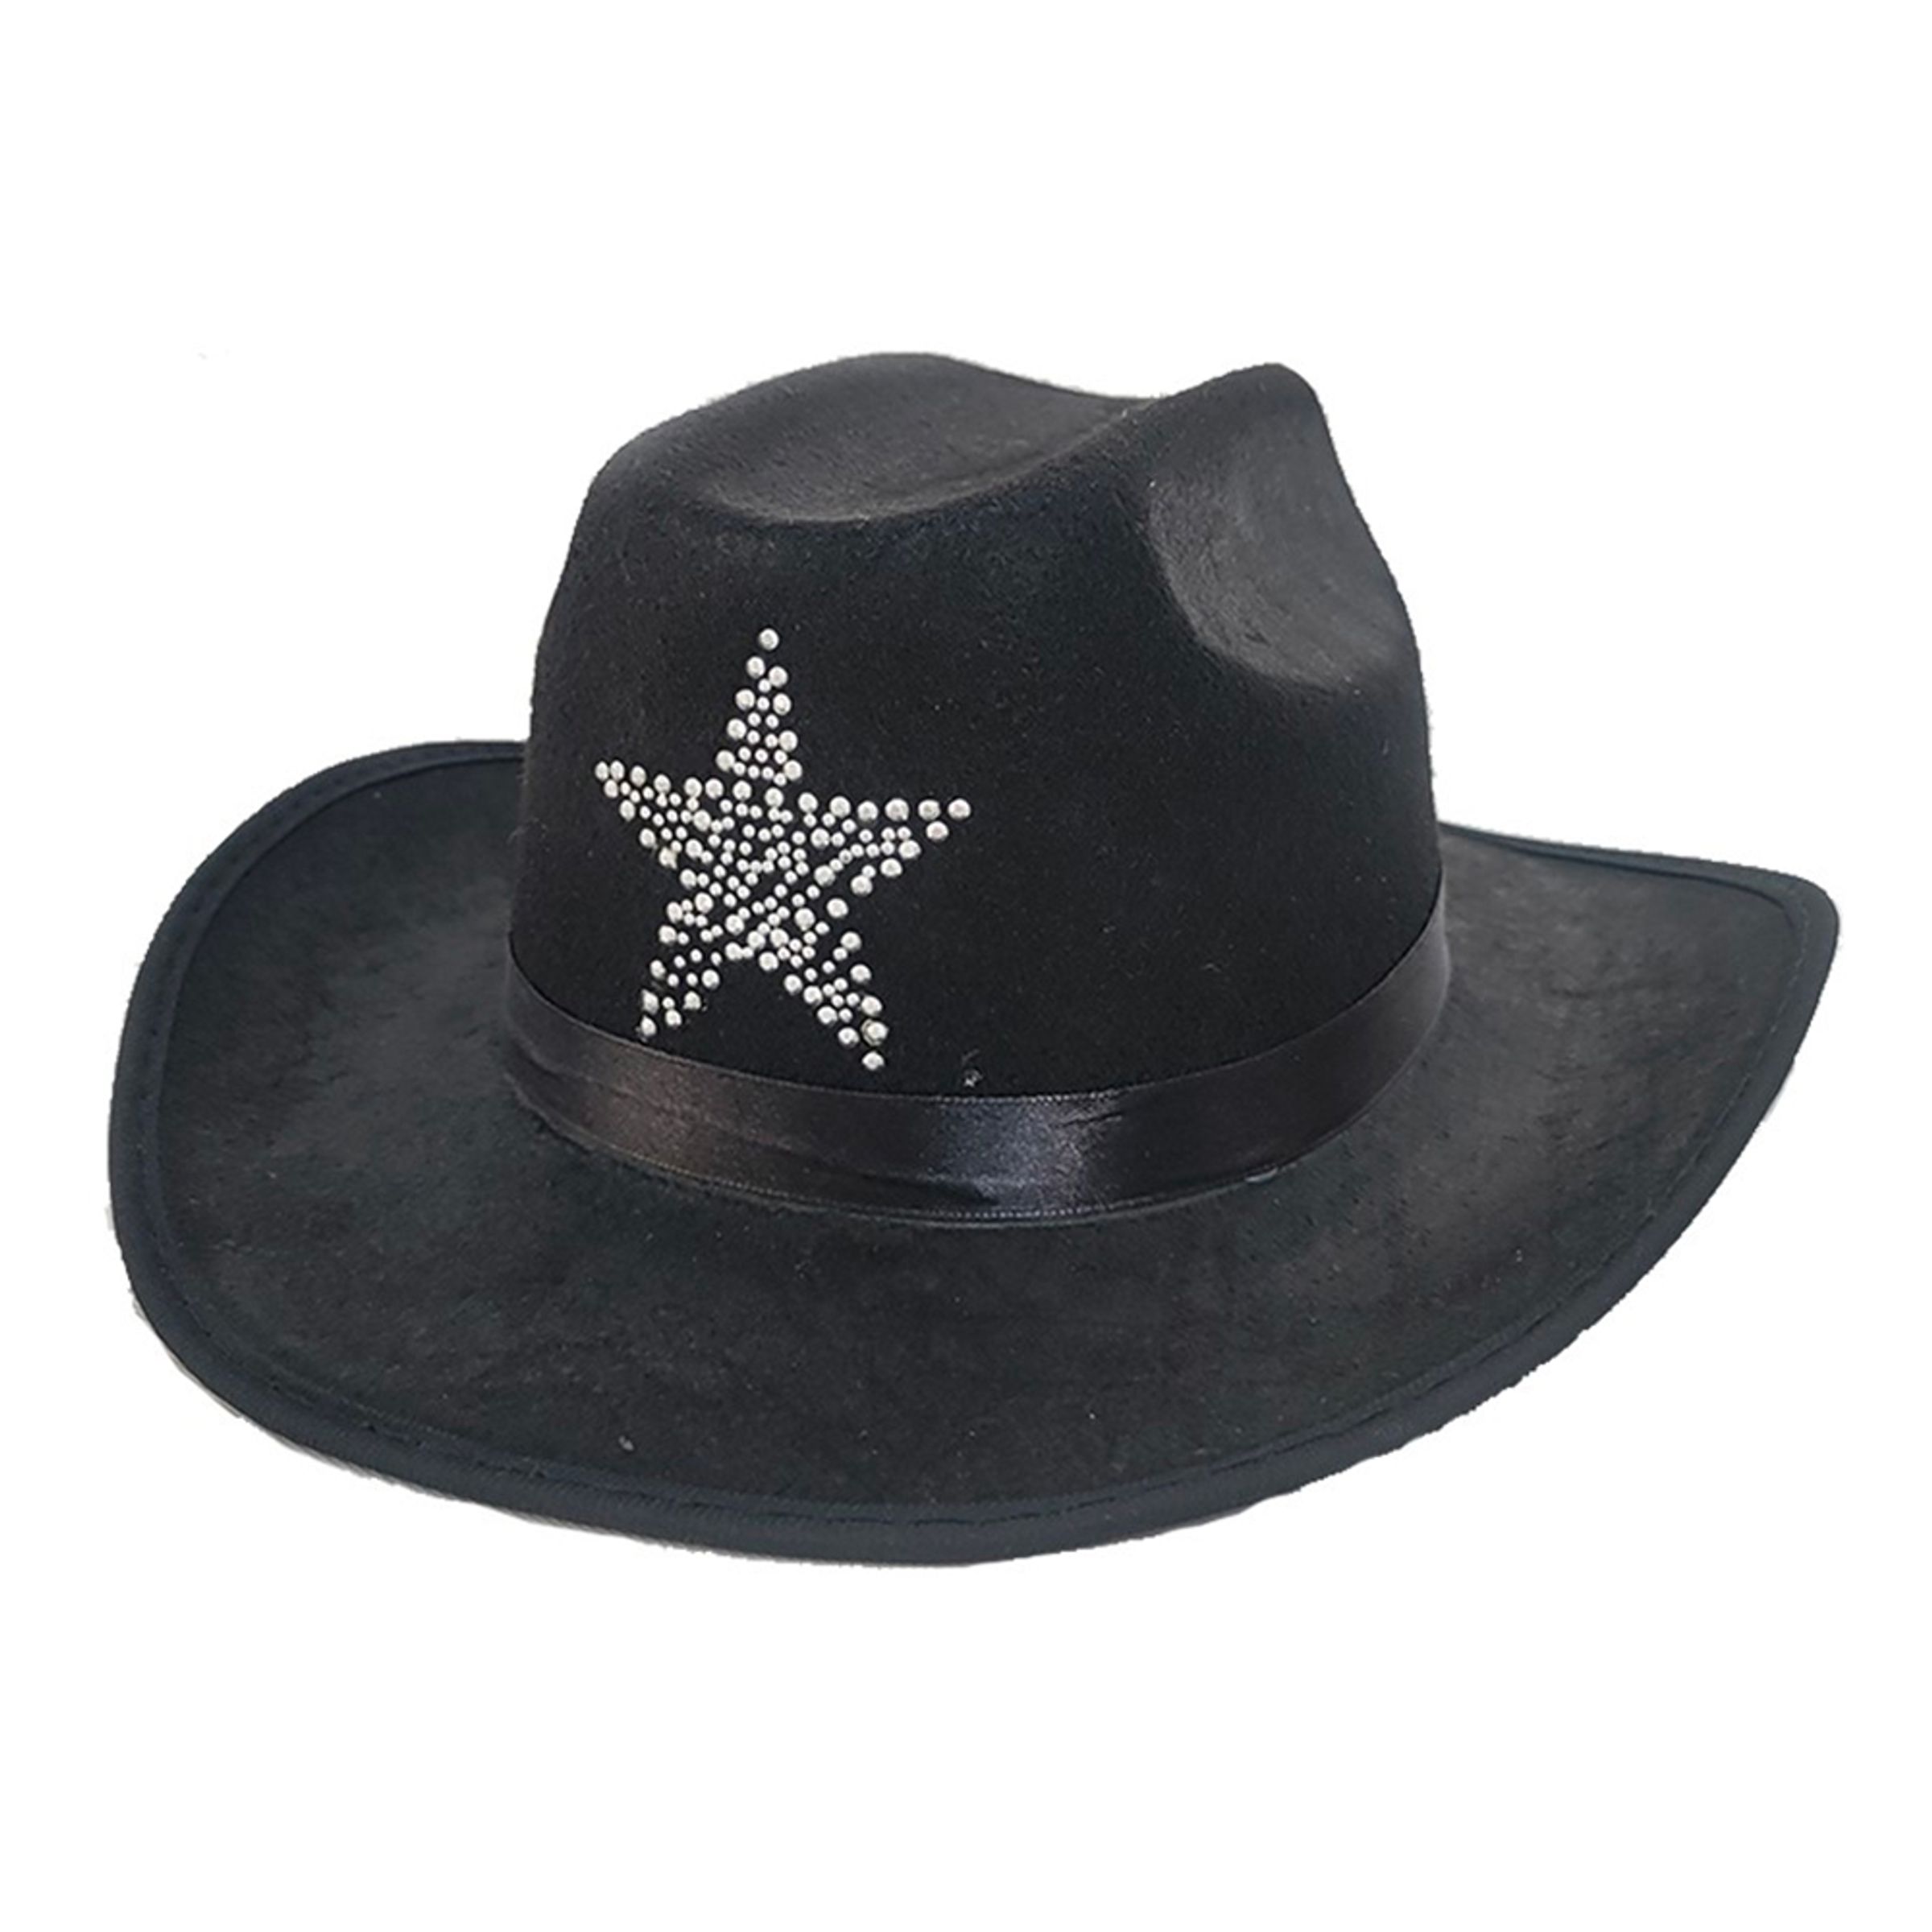 Svart Cowboyhatt med Sheriffstjärna - One size